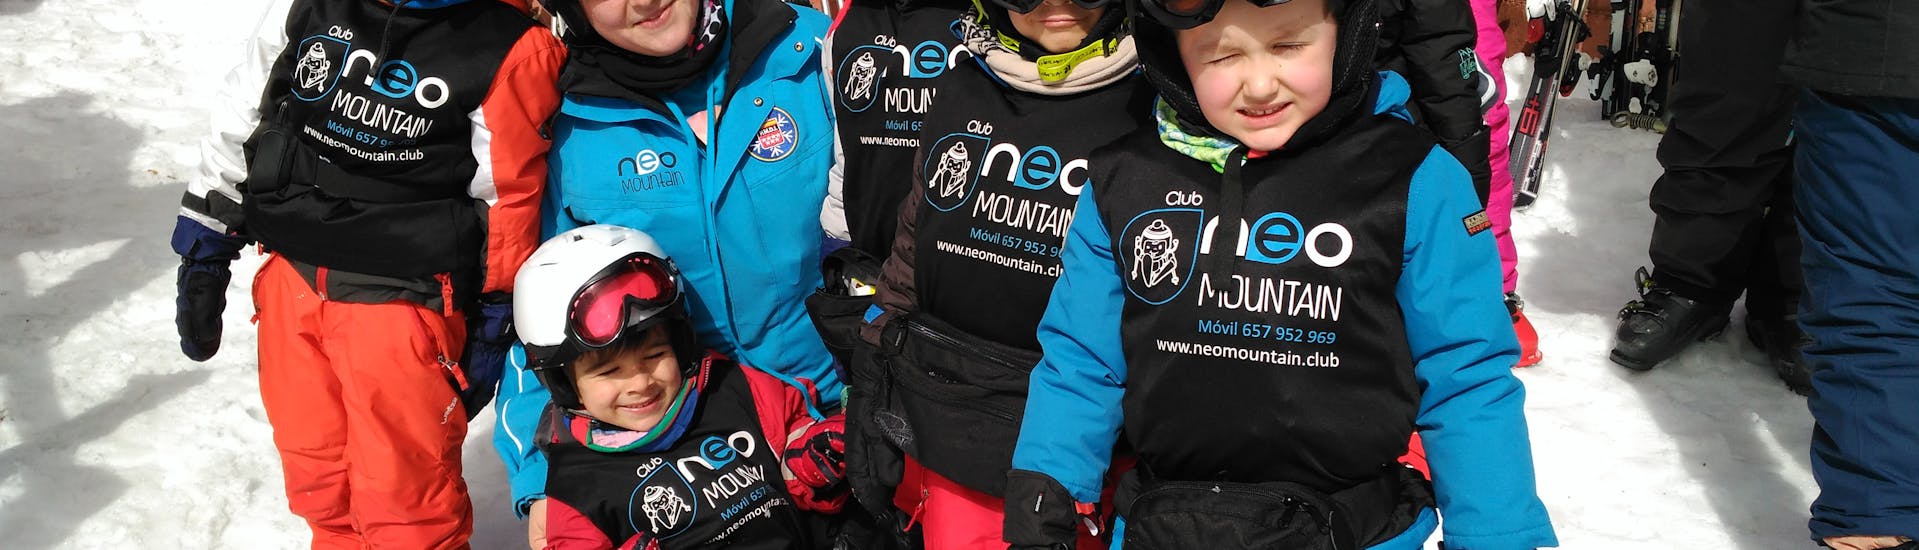 Skilessen voor kinderen vanaf 4 jaar - beginners.